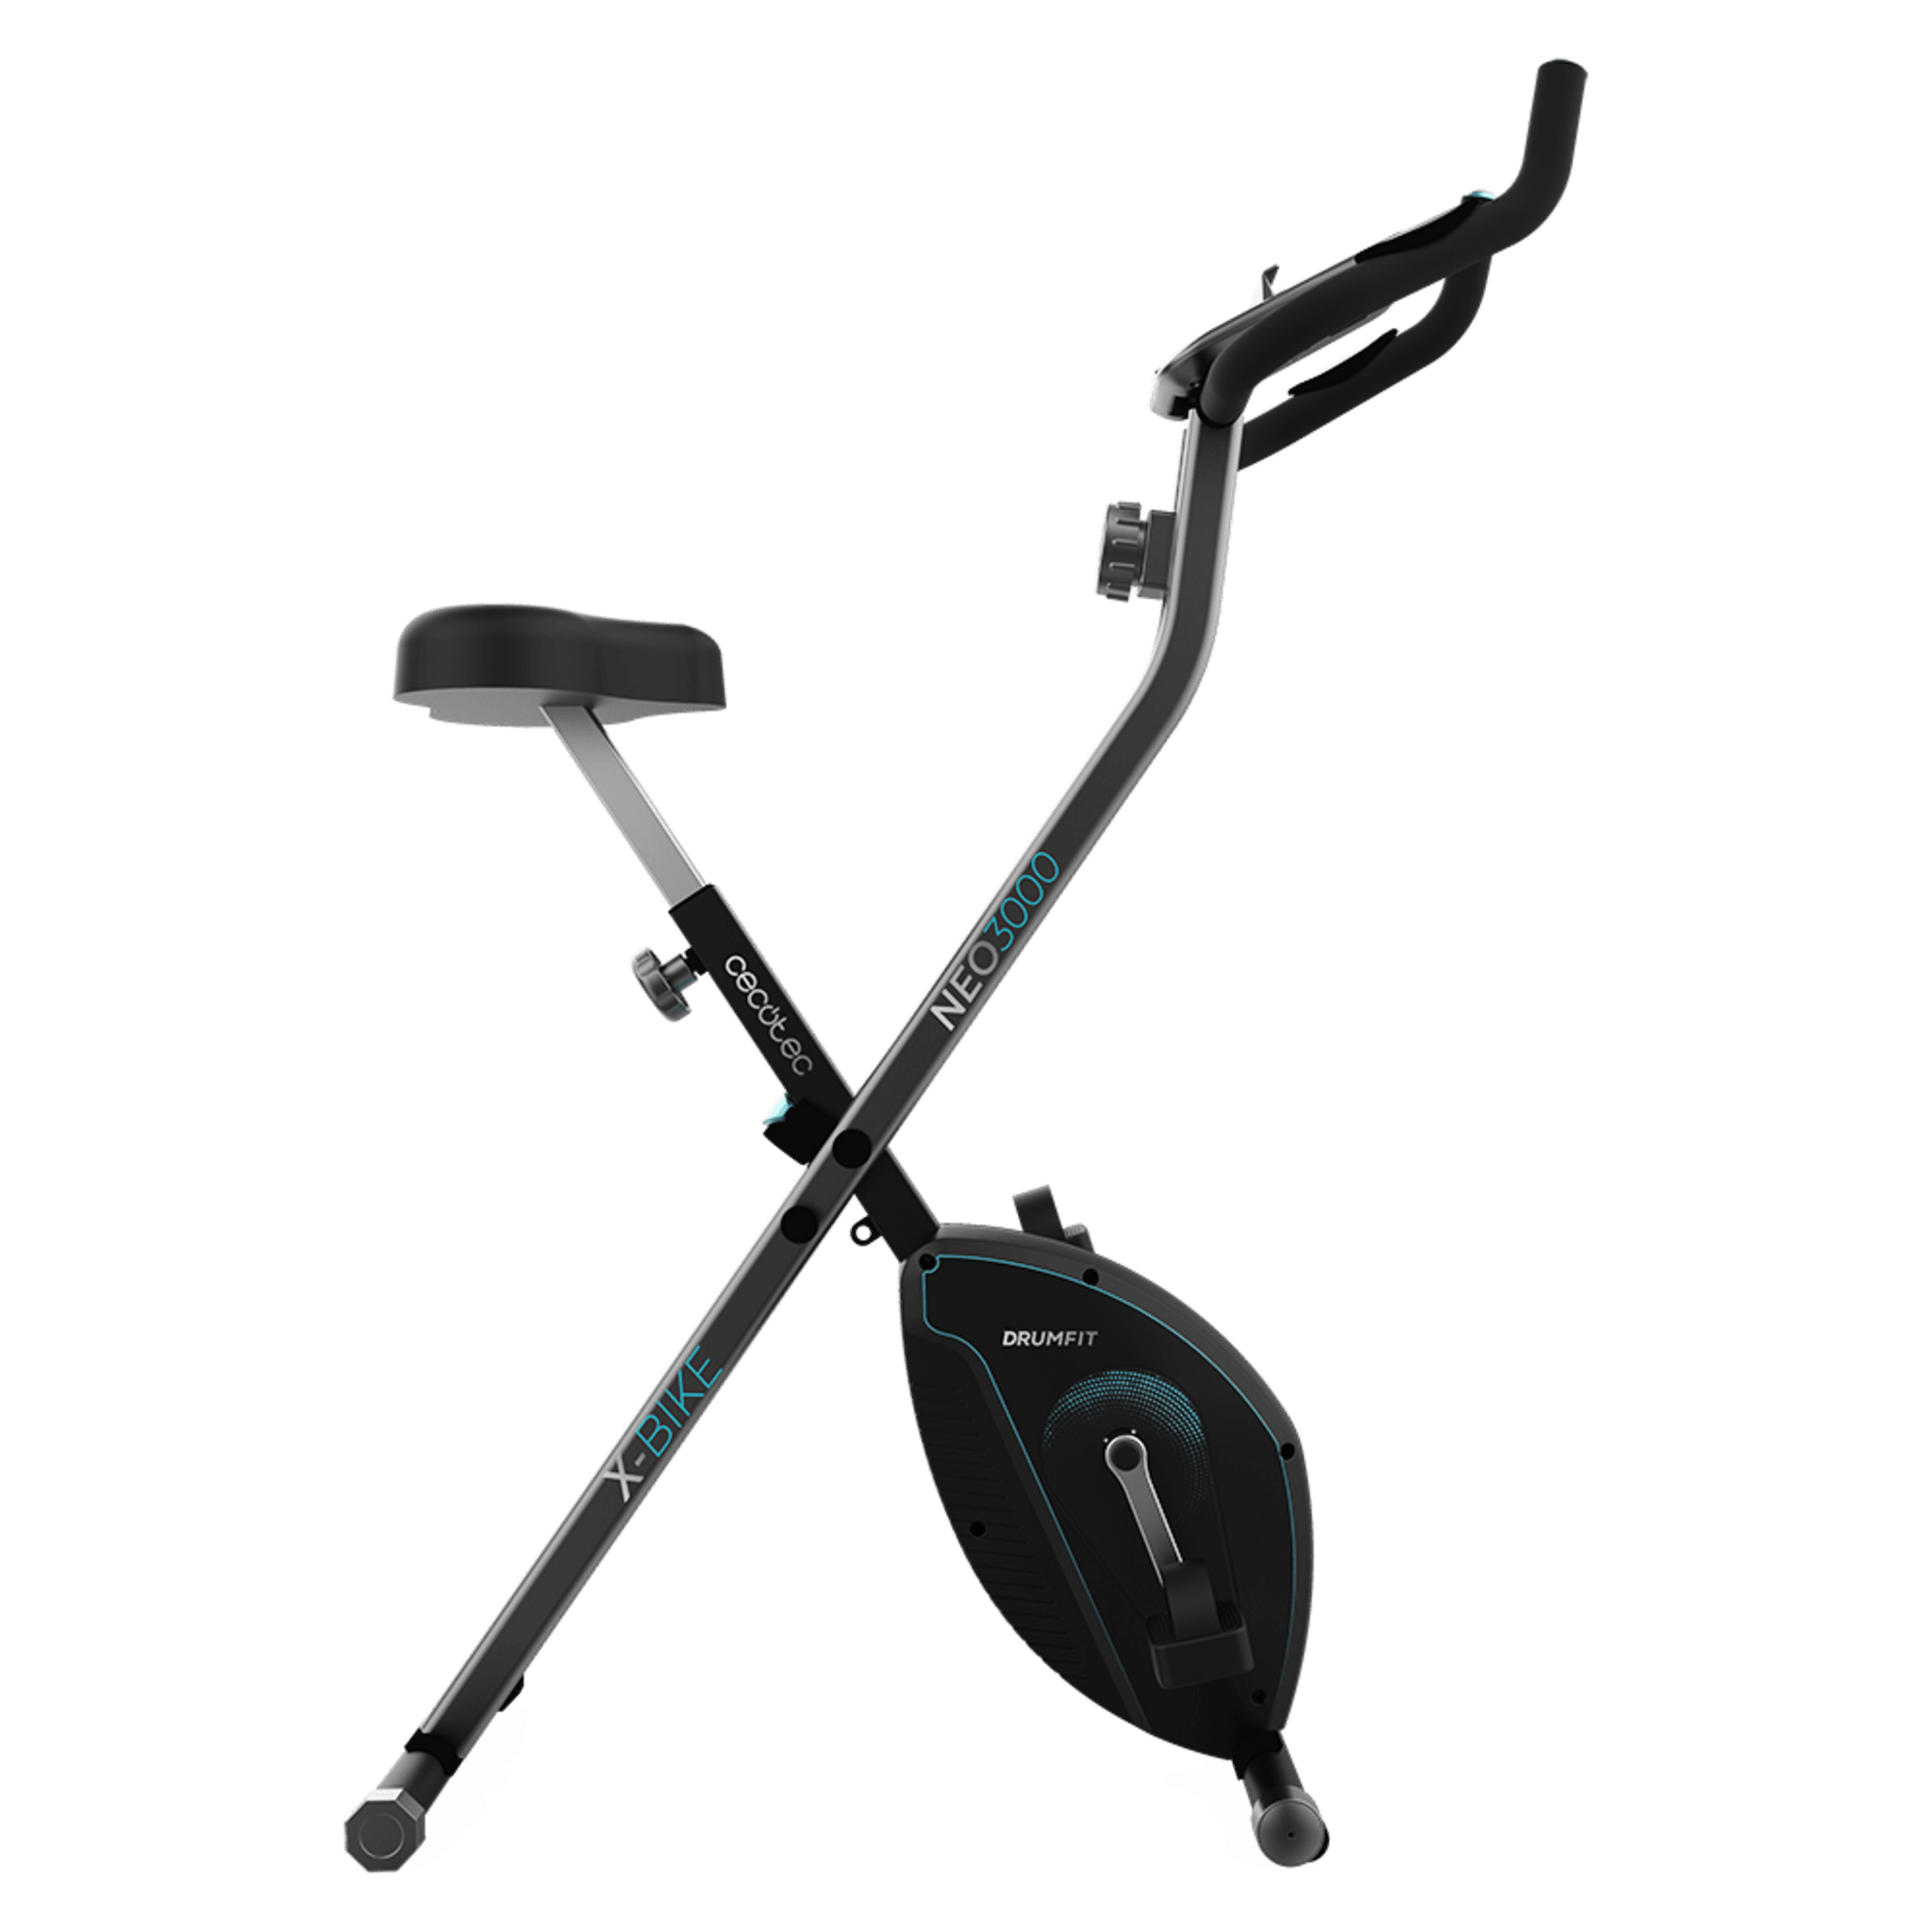 Drumfit X-Bike 3000 Neo Bicicleta estática plegable. Pantalla LCD. Volante de inercia 3 Kg. Resistencia magnética variable. Sillín confort. Soporte para tablet y ruedas de transporte.